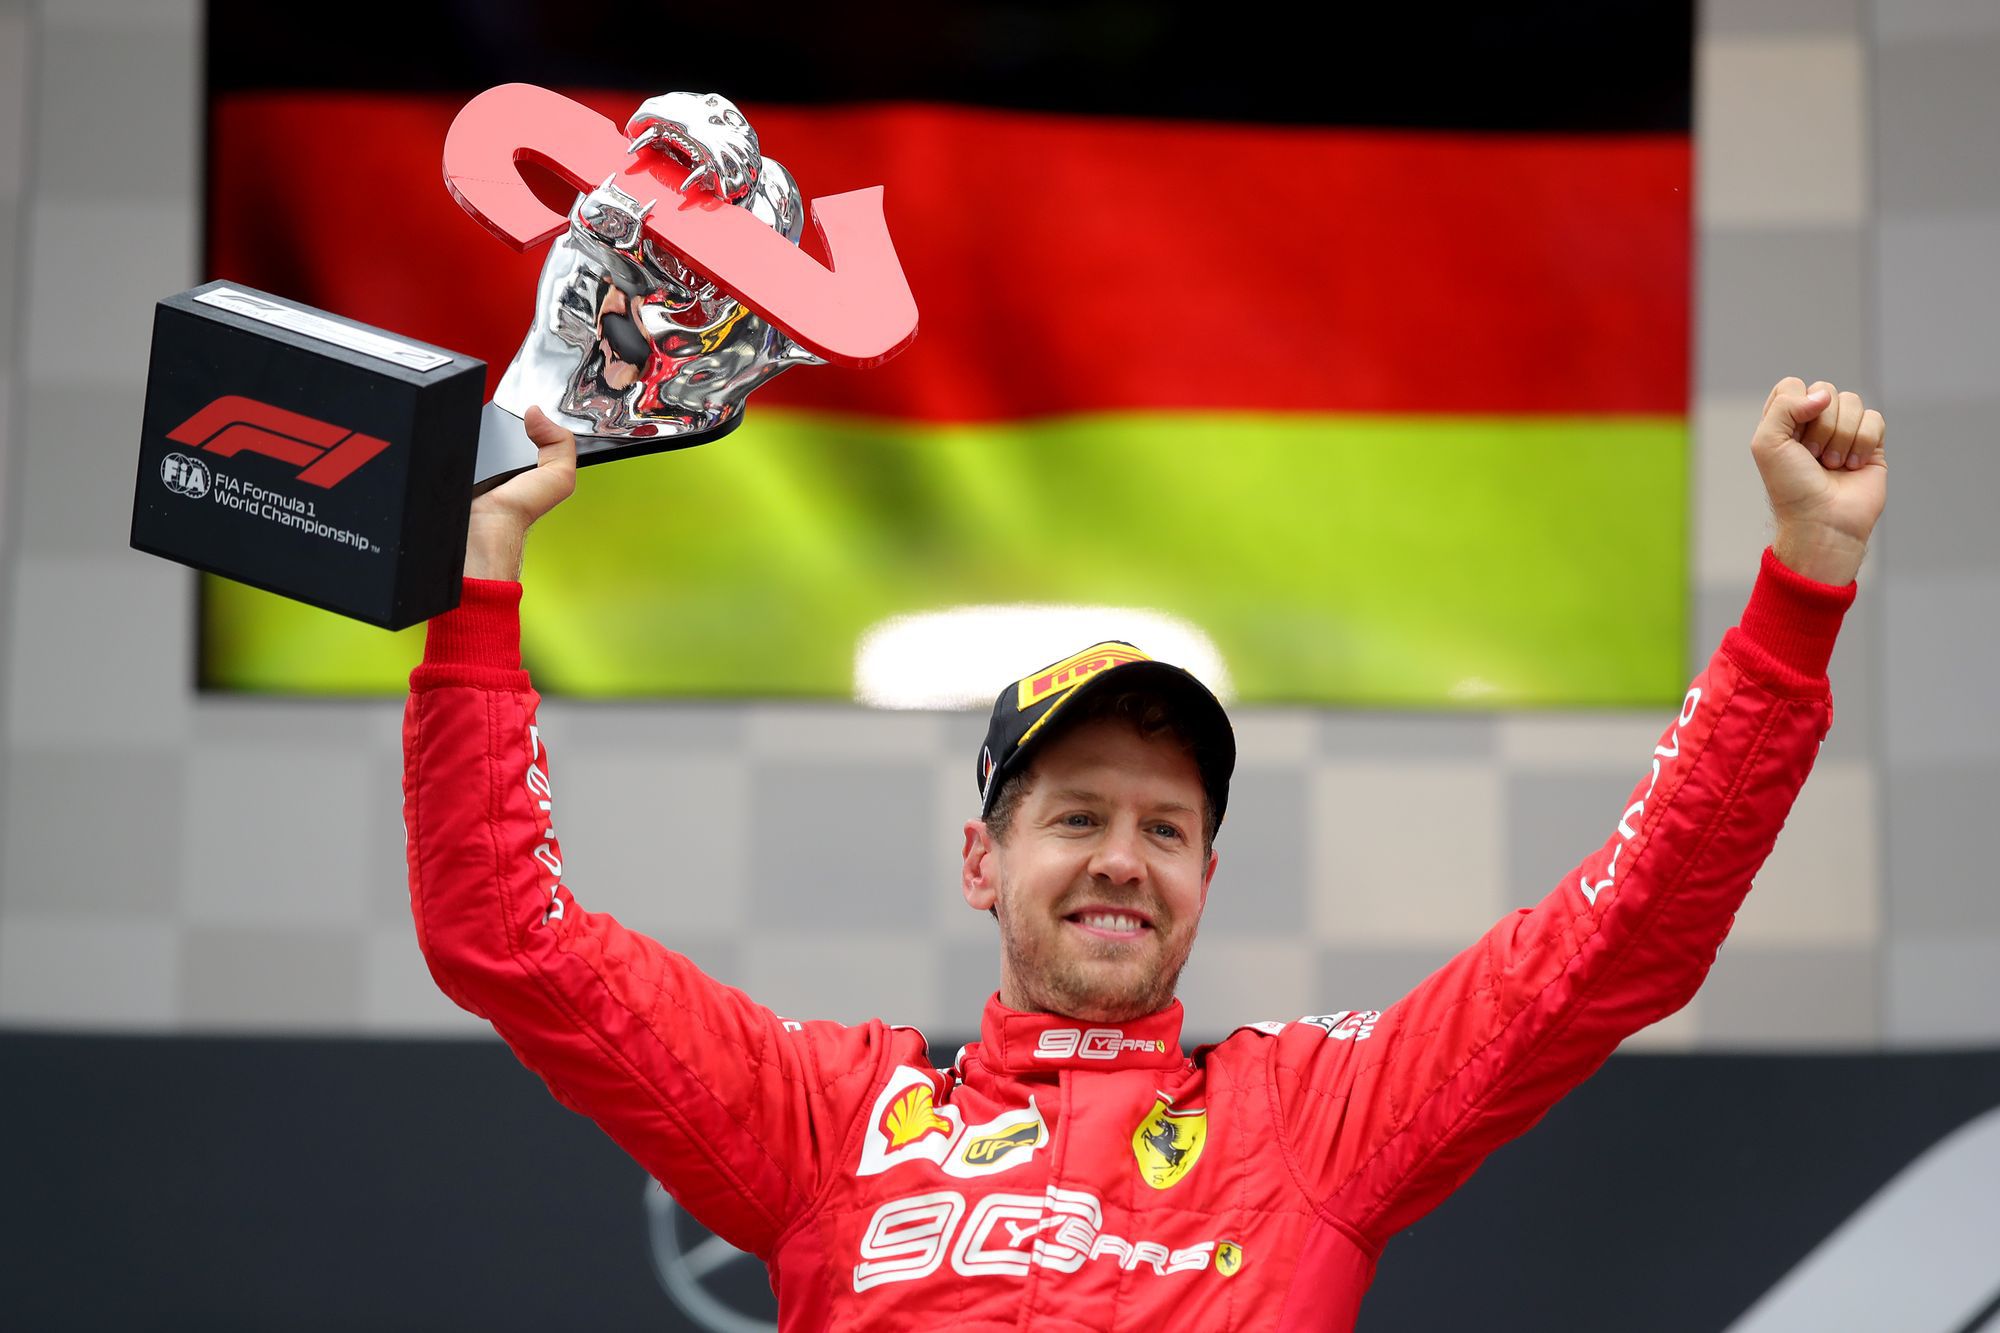 Sebastian Vettel utolsóként rajtolt, de másodikként ért célba Németországban tavaly, most arról beszélt, miért épp az Aston Martint választotta. / Fotó: Getty Images